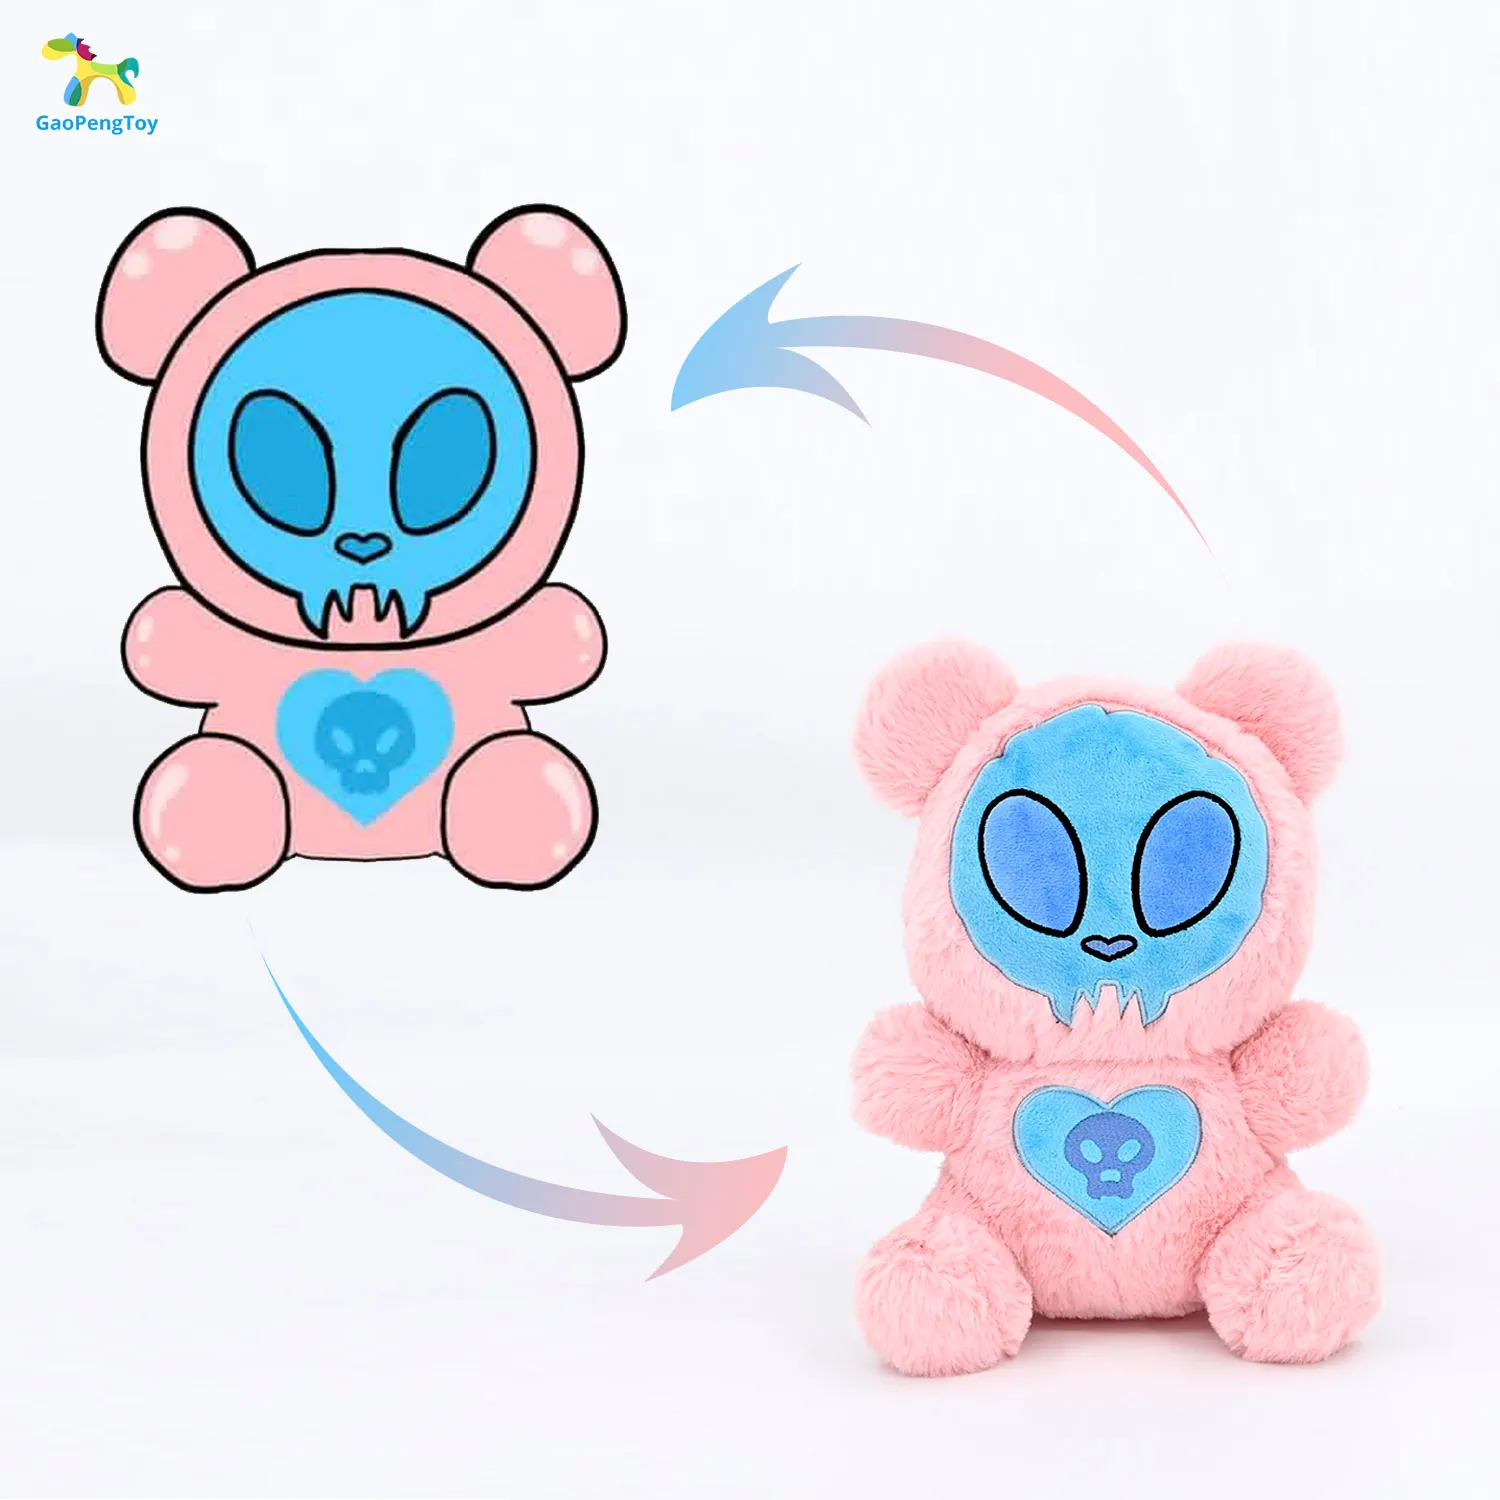 Gaopeng design personalizado origem fábrica animal pelúcia rosa crânio menino brinquedo de pelúcia bonito realista bicho de pelúcia brinquedo